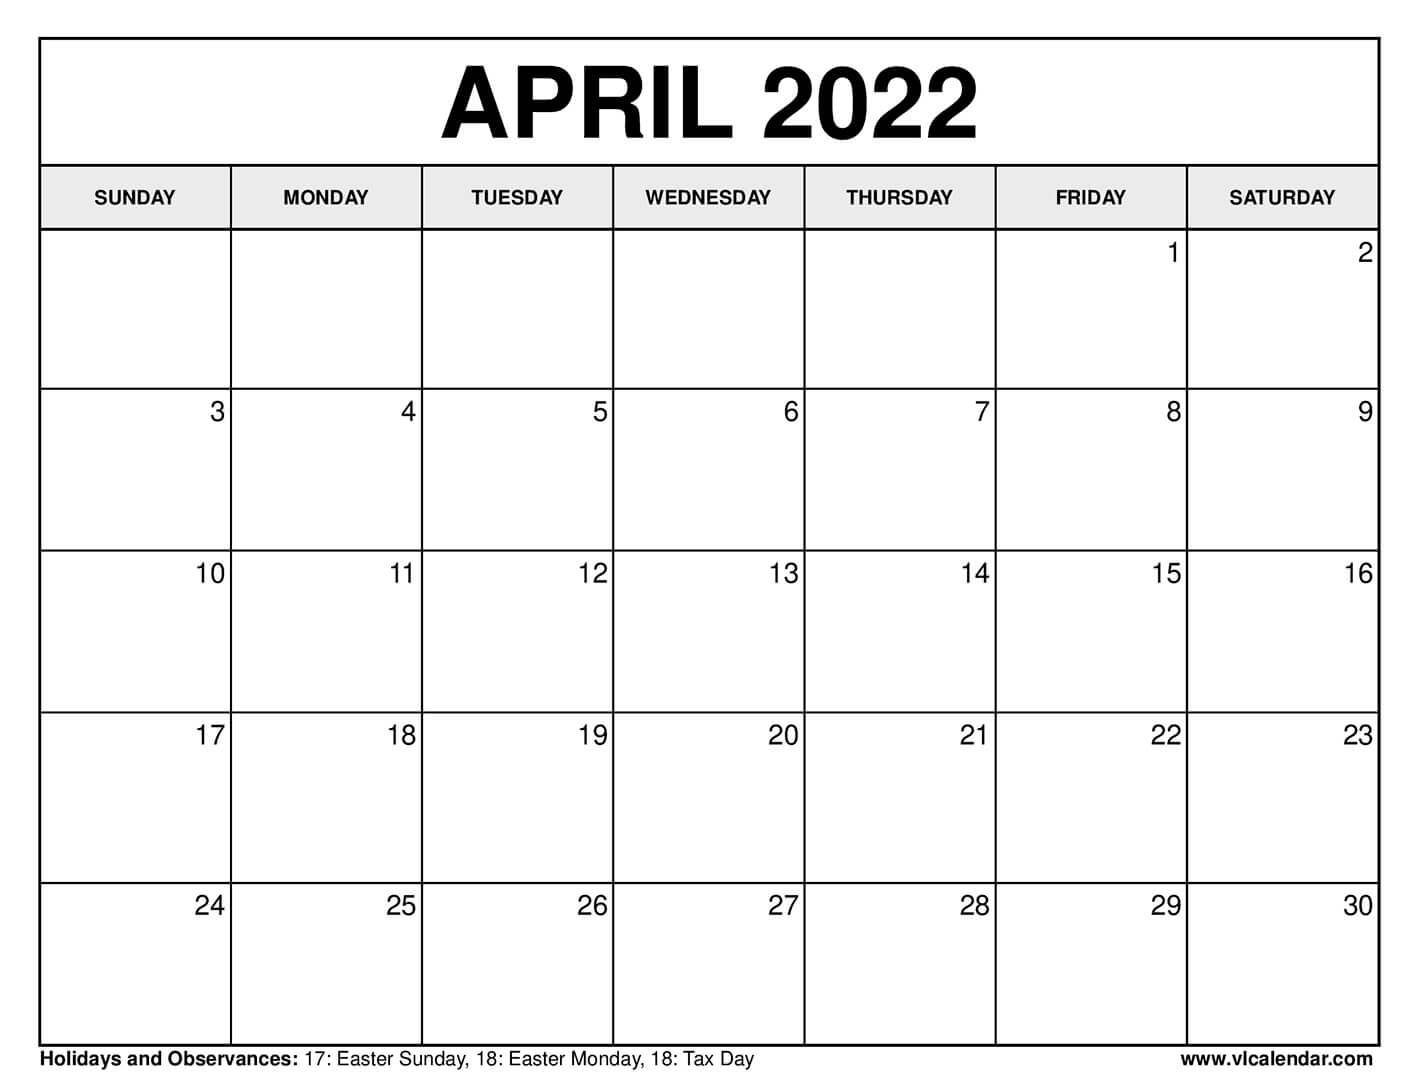 Get April 2022 Calendar Template